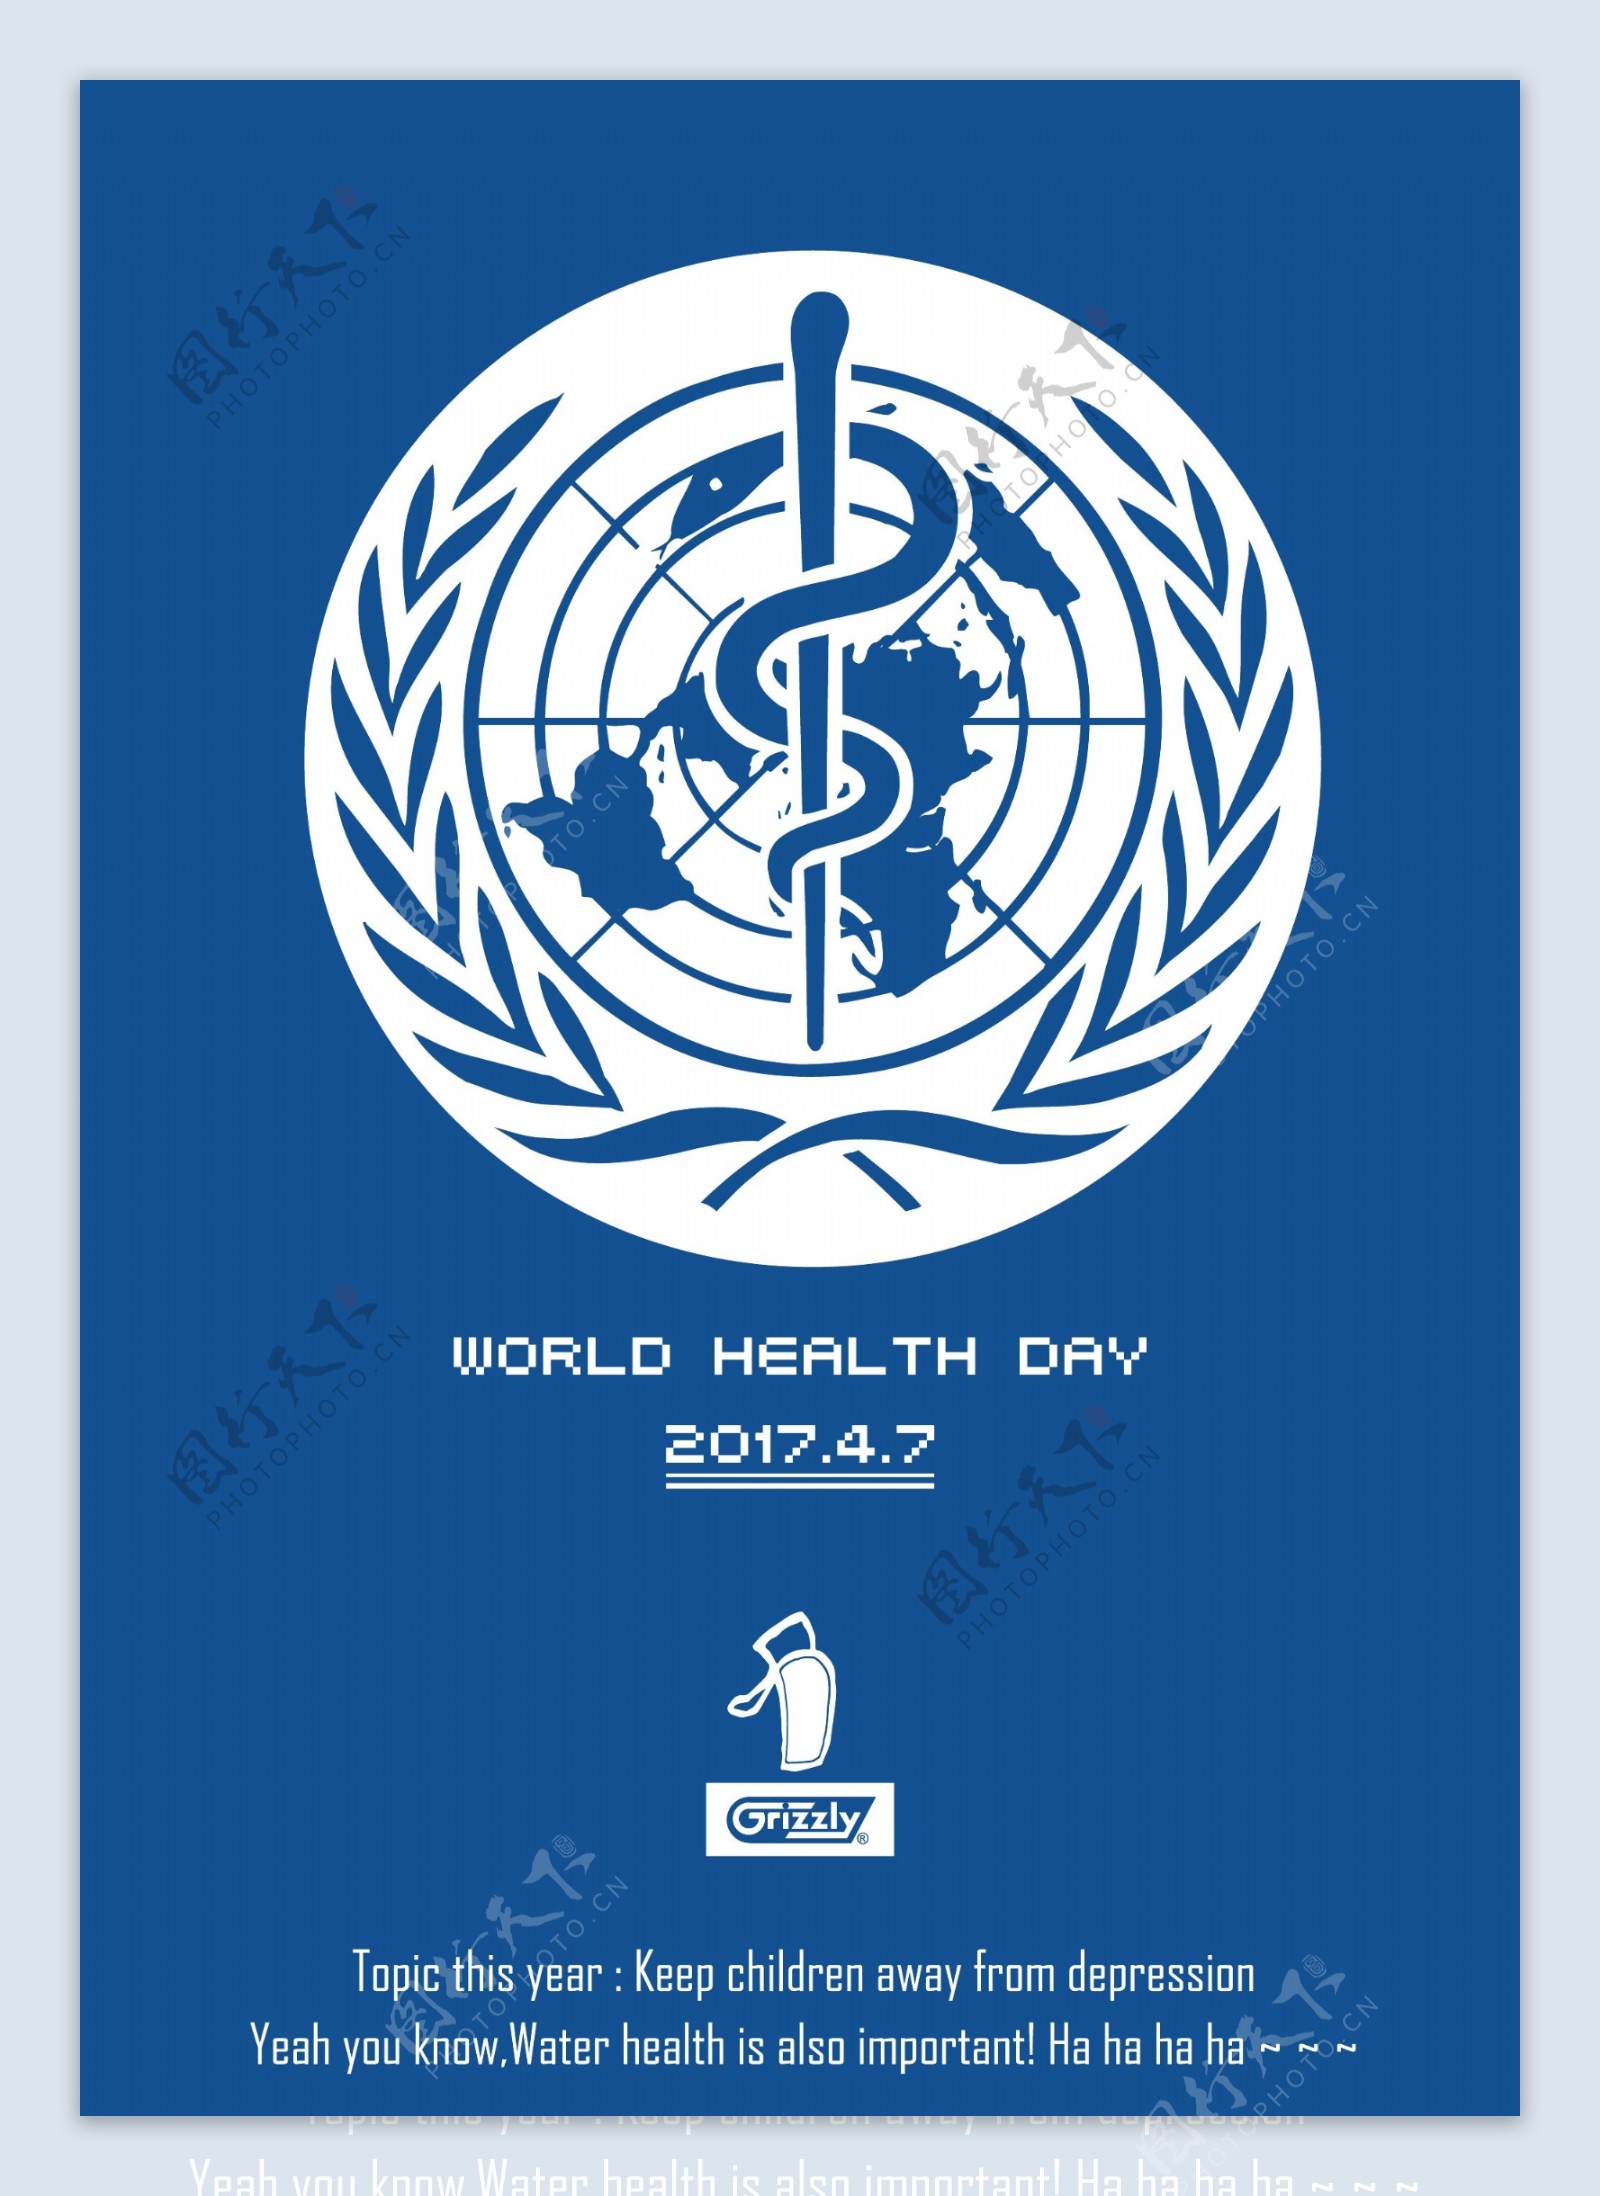 世界卫生日